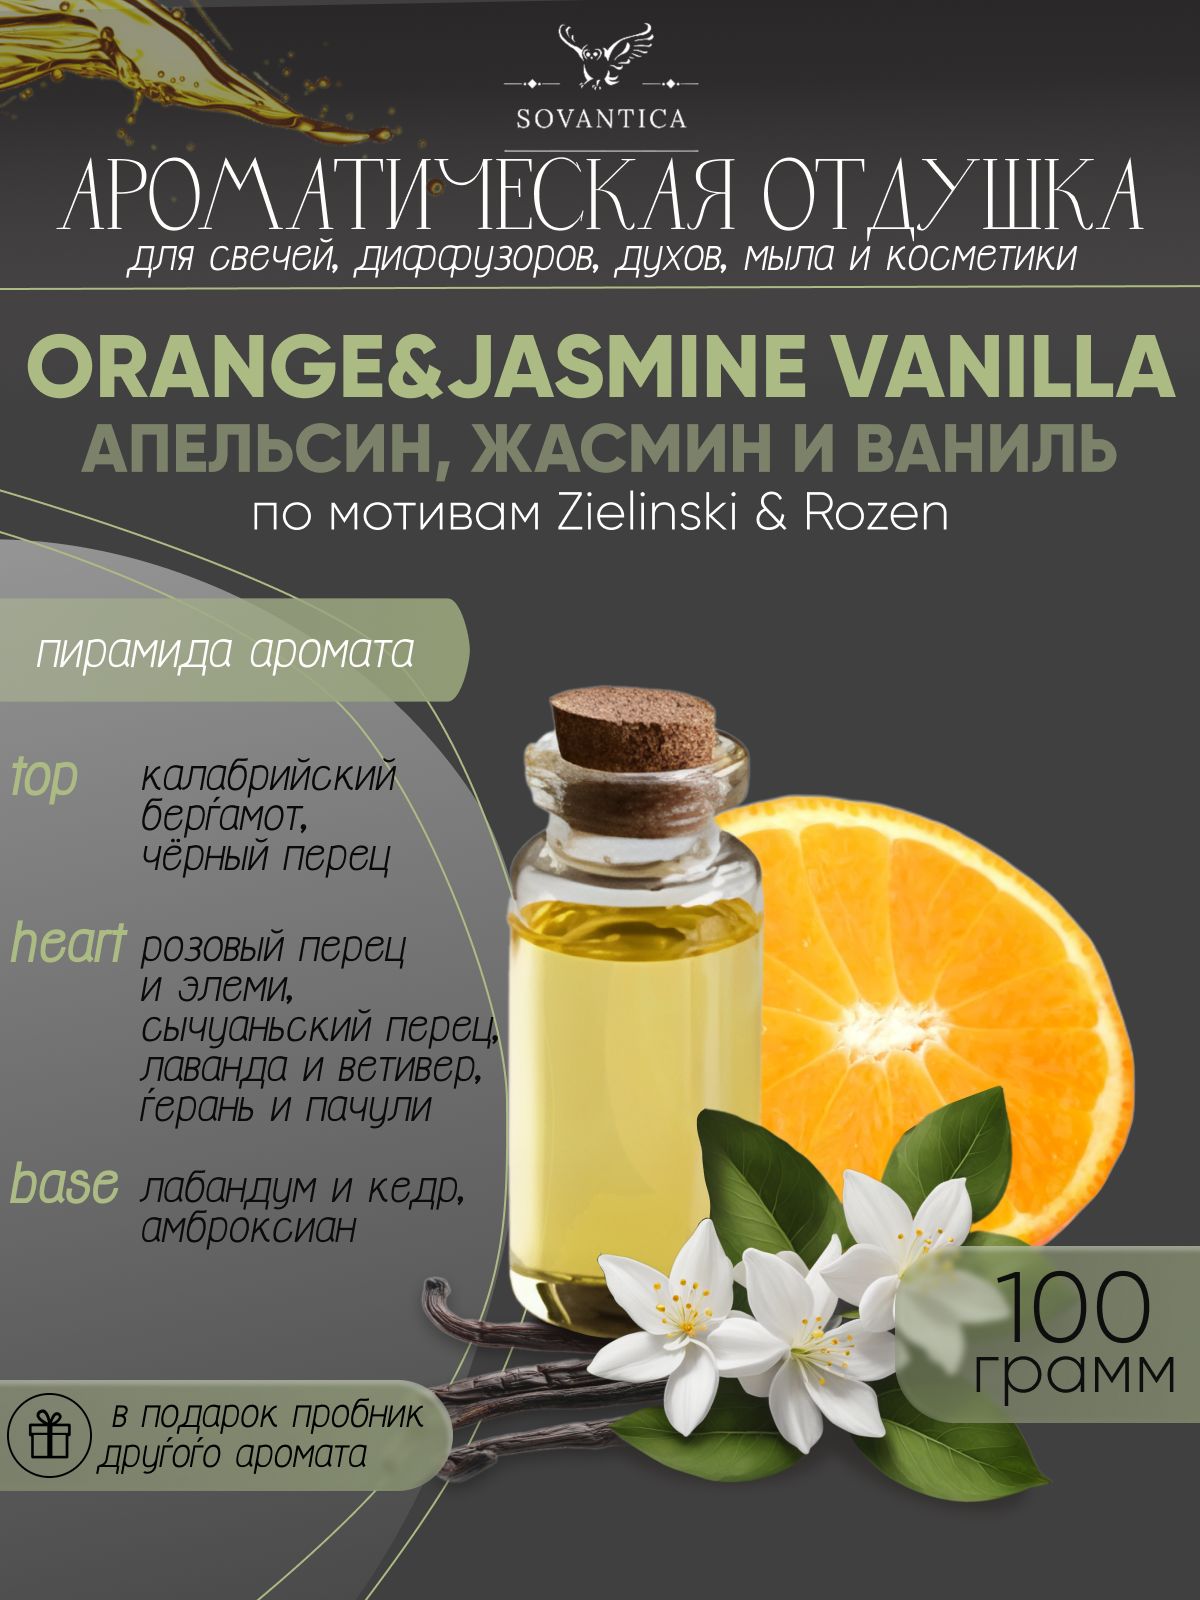 Ароматическая отдушка Sovantica Апельсин, жасмин и ваниль 100мл